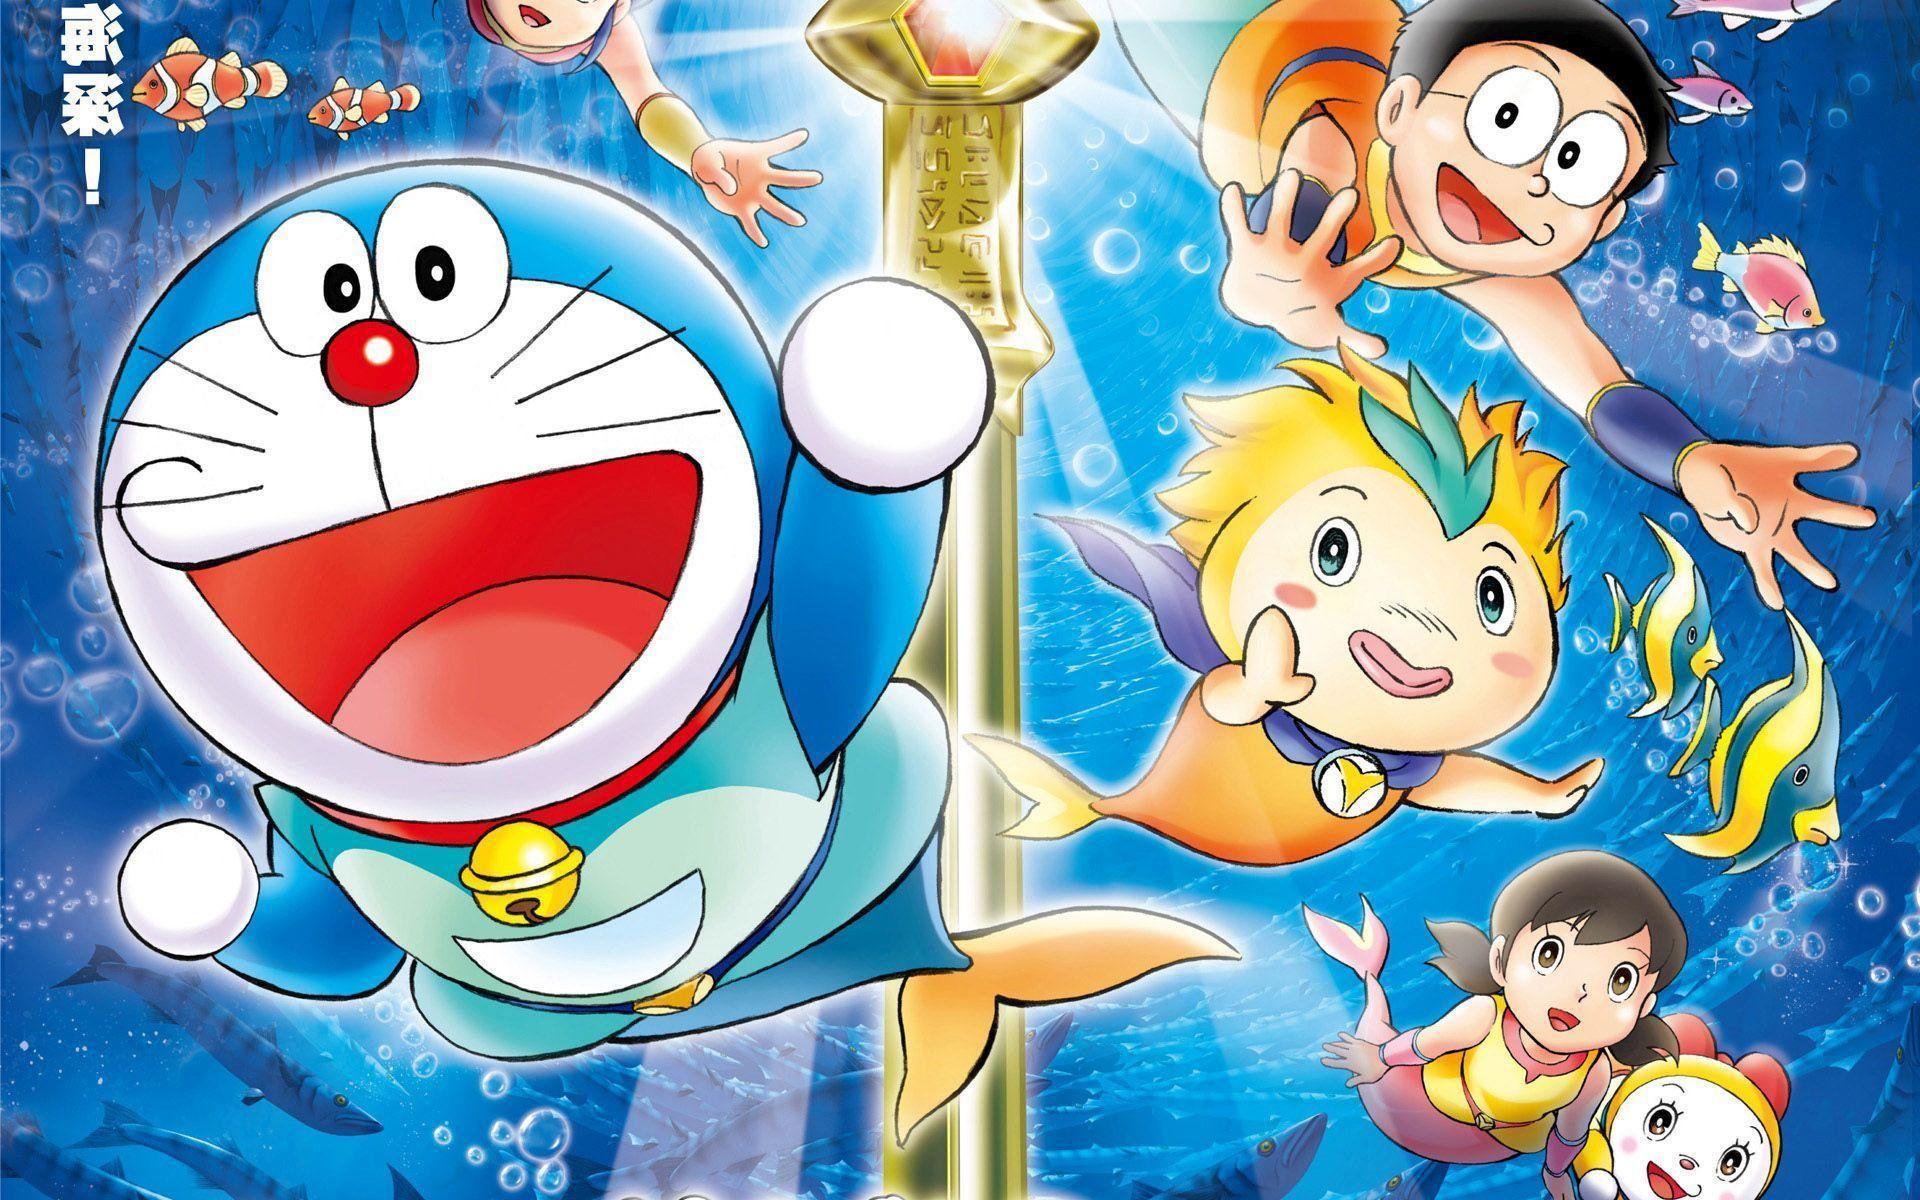 Doraemon 3D: Hình nền Doraemon 3D Hình nền Doraemon 3D là một lựa chọn hoàn hảo cho những ai yêu thích nhân vật Doraemon. Những hình ảnh Doraemon 3D đặc sắc sẽ mang đến cho bạn cảm giác tuyệt vời như đang được sống trong thế giới của Doraemon. Hãy cùng trải nghiệm và khám phá thế giới của Doraemon 3D!